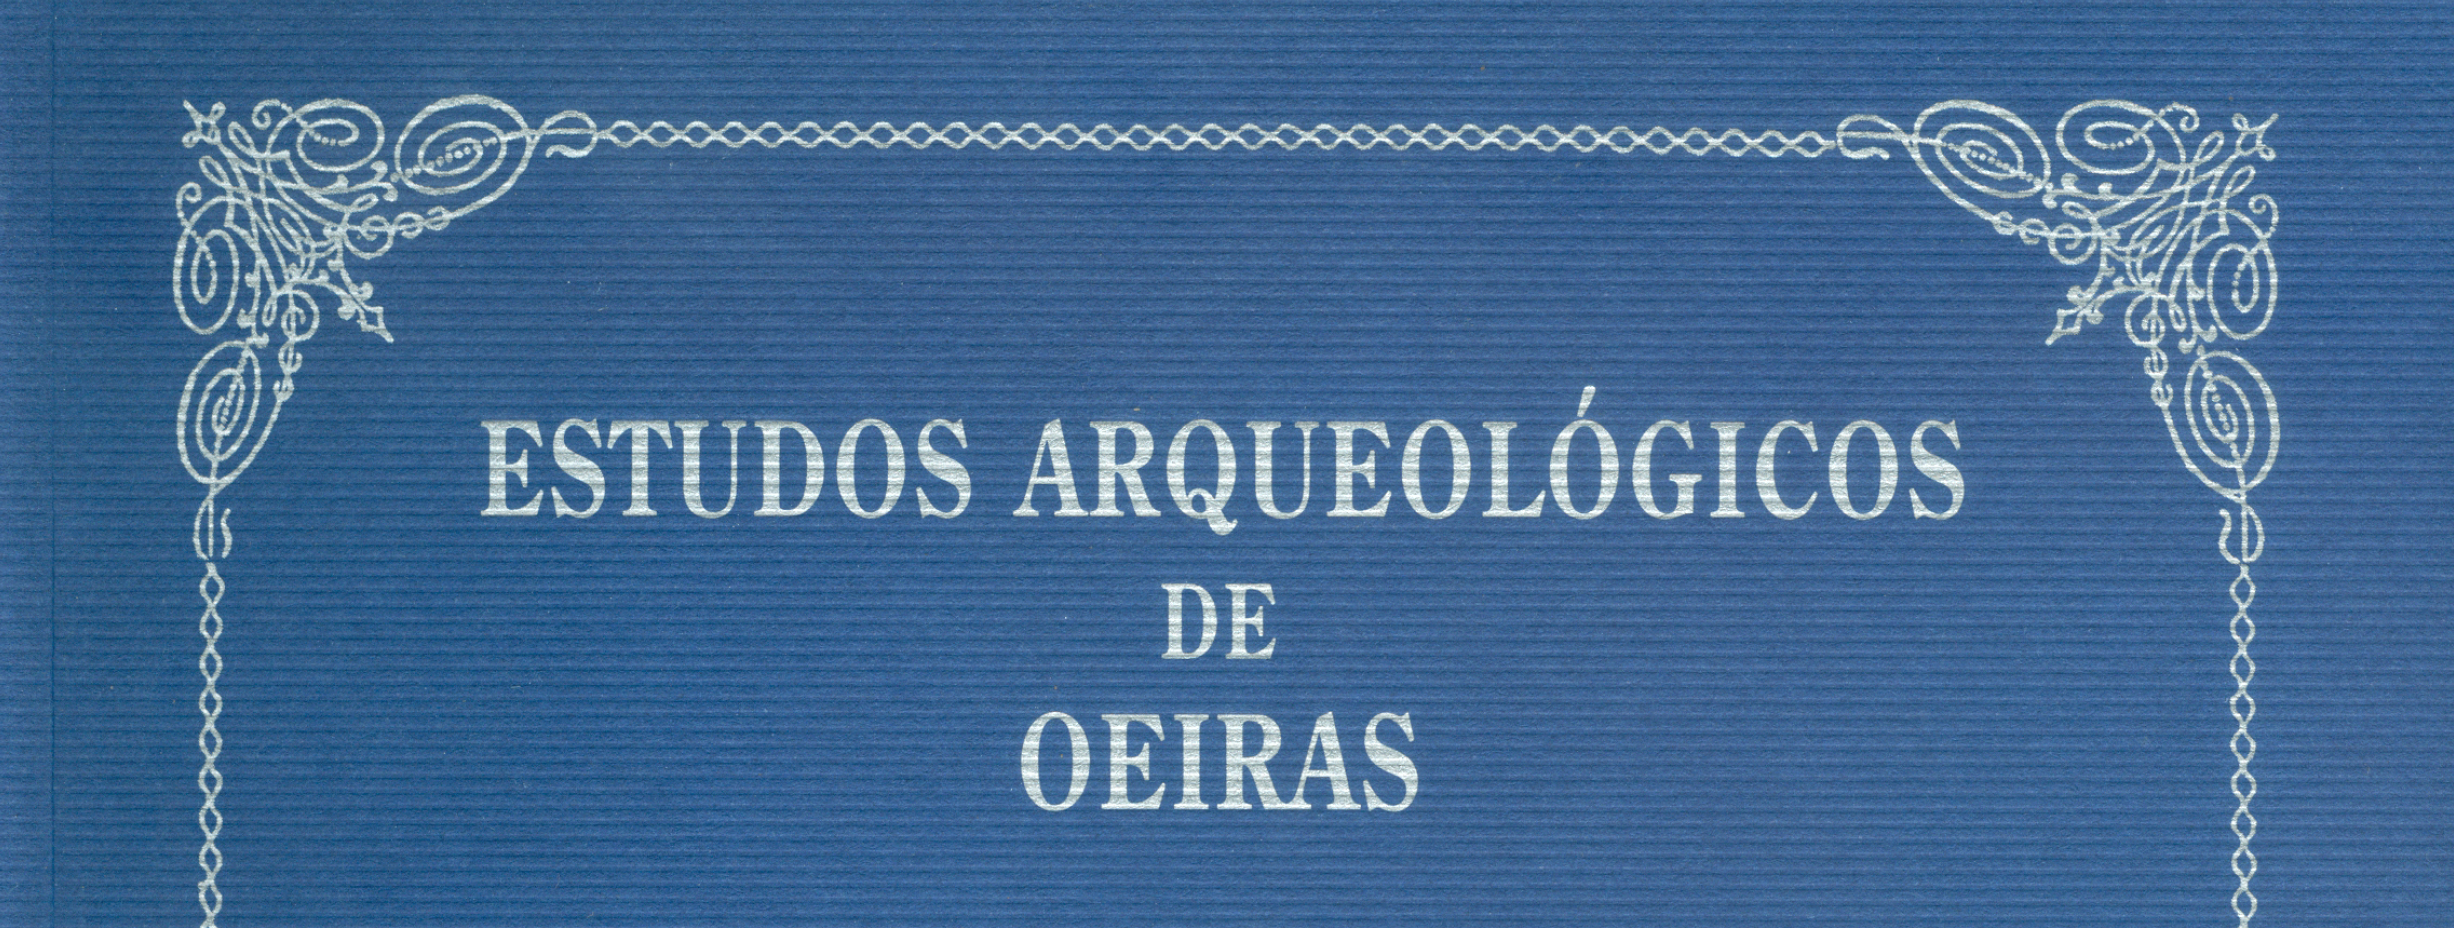 Estudos Arqueológicos de Oeiras, 13